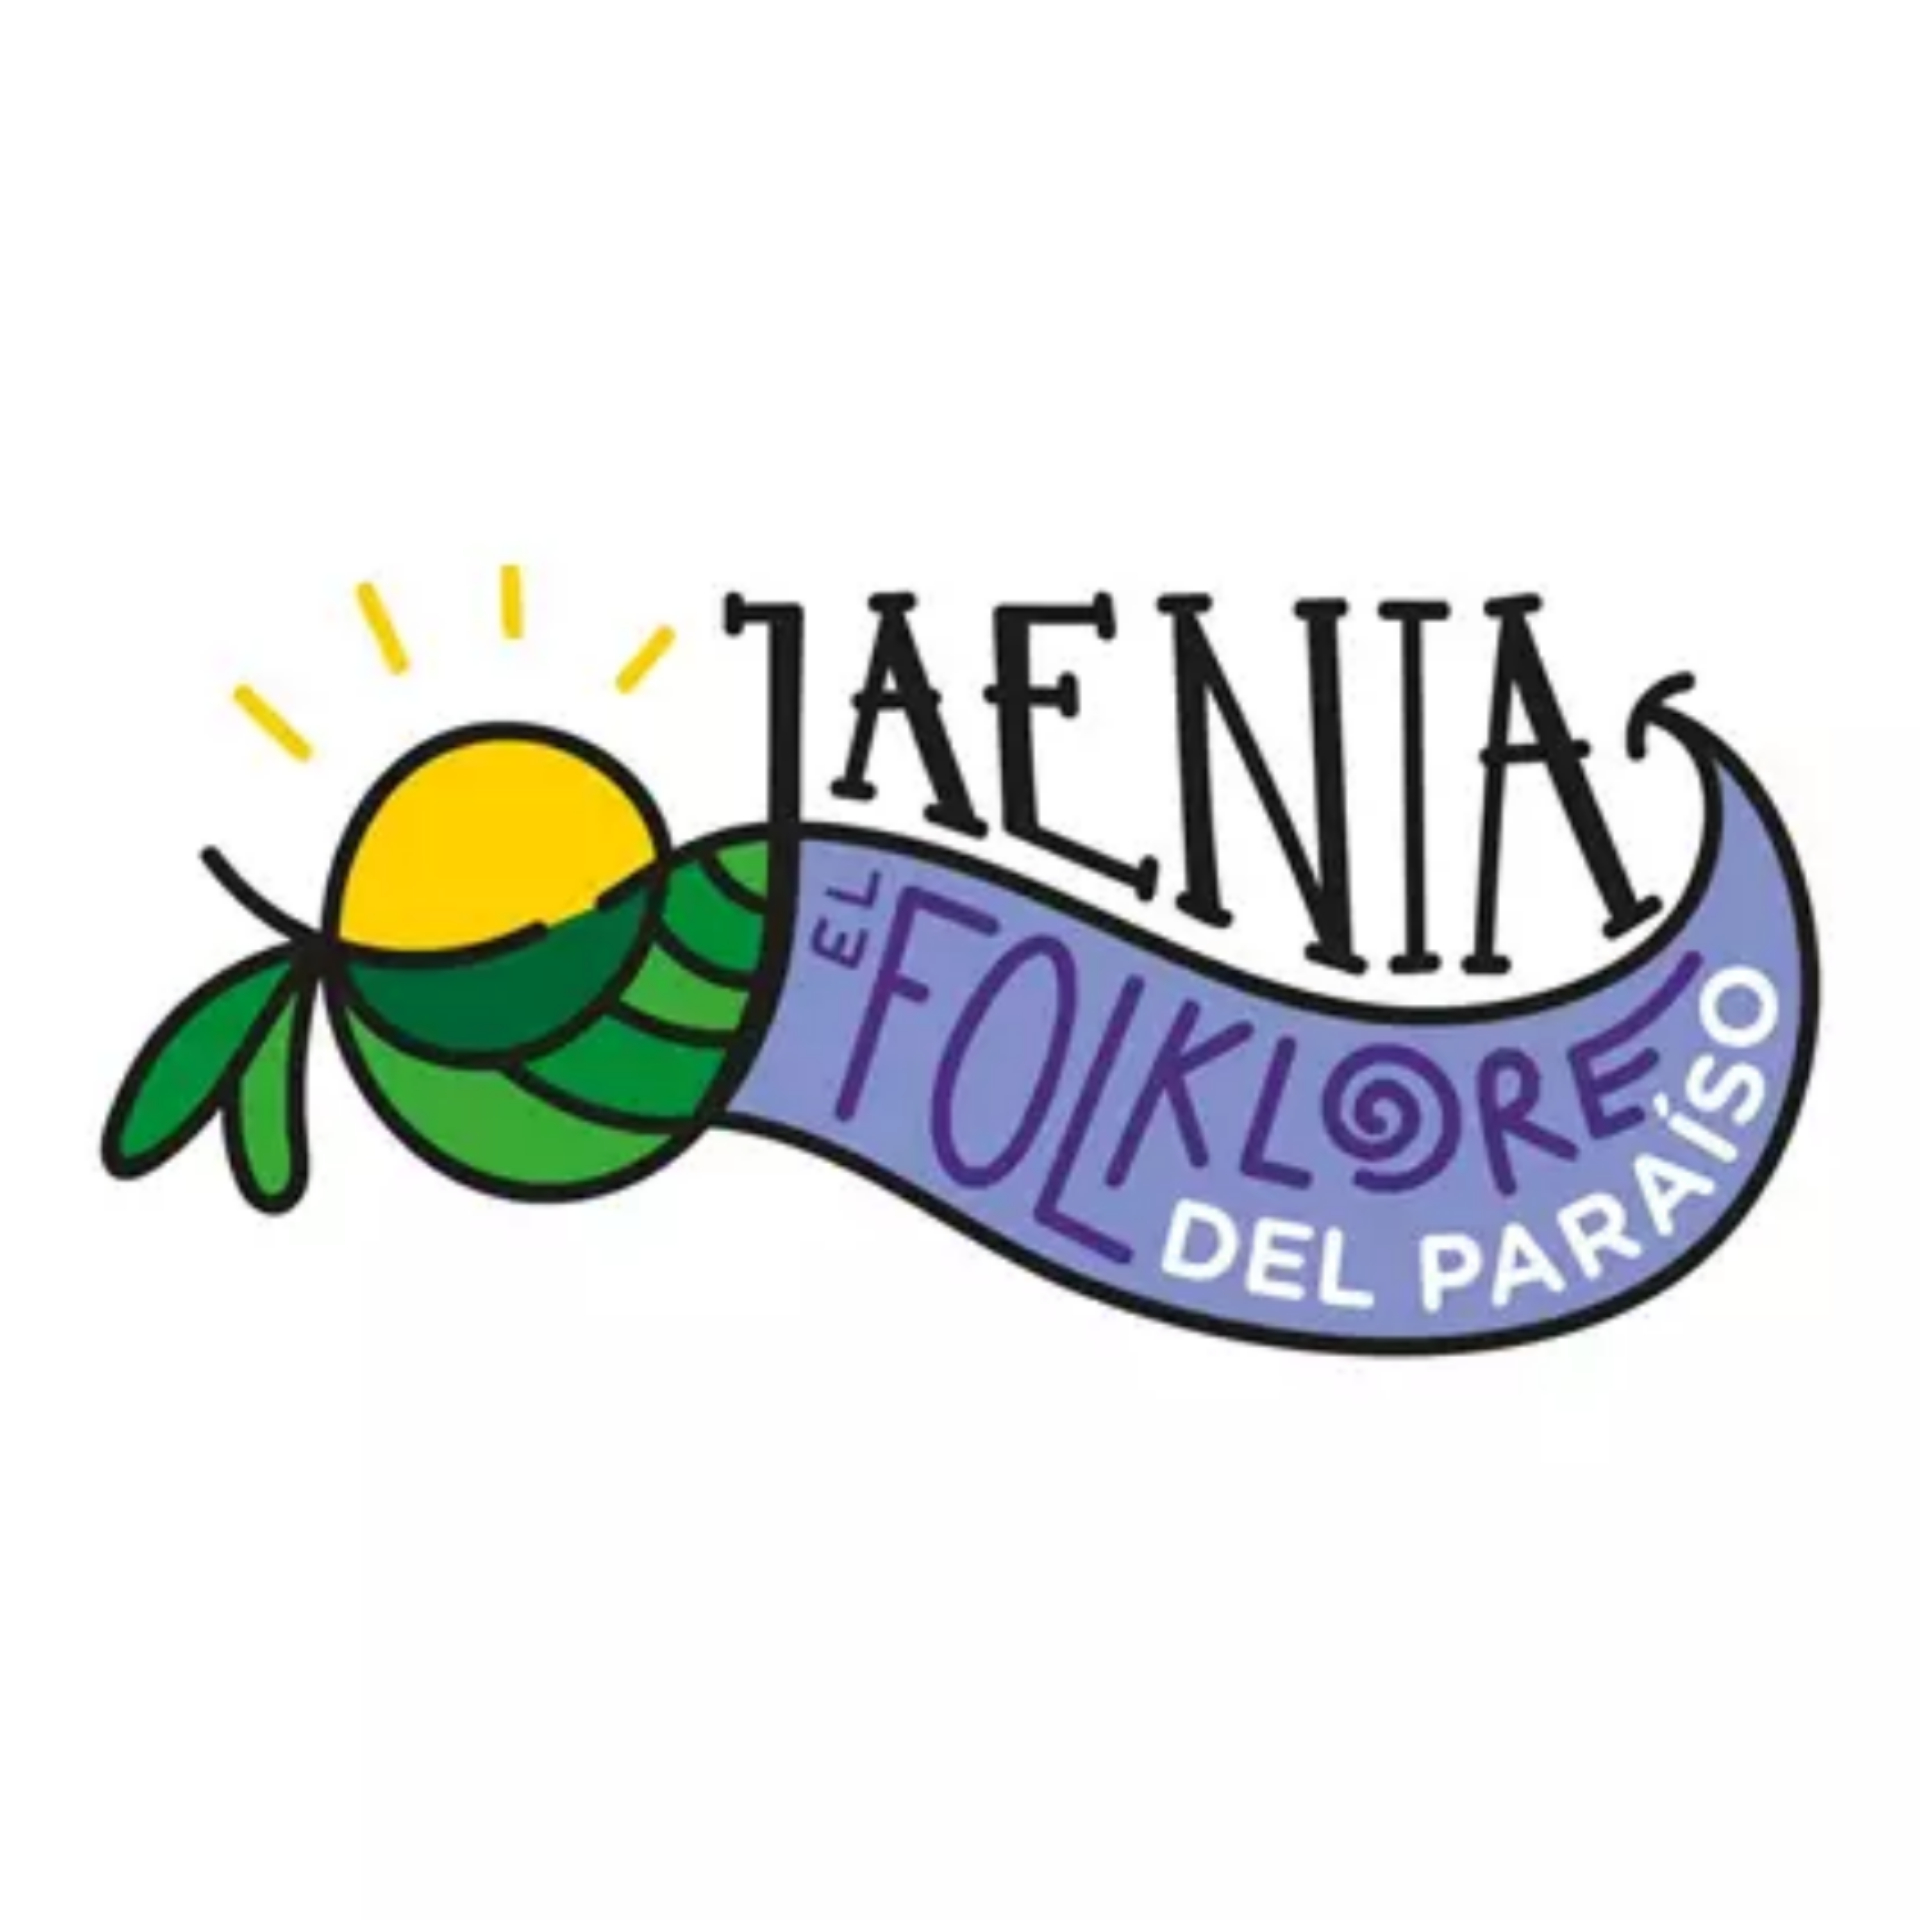 Jódar acoge este viernes el primer concierto del programa ‘Jaenia, el folklore del paraíso’